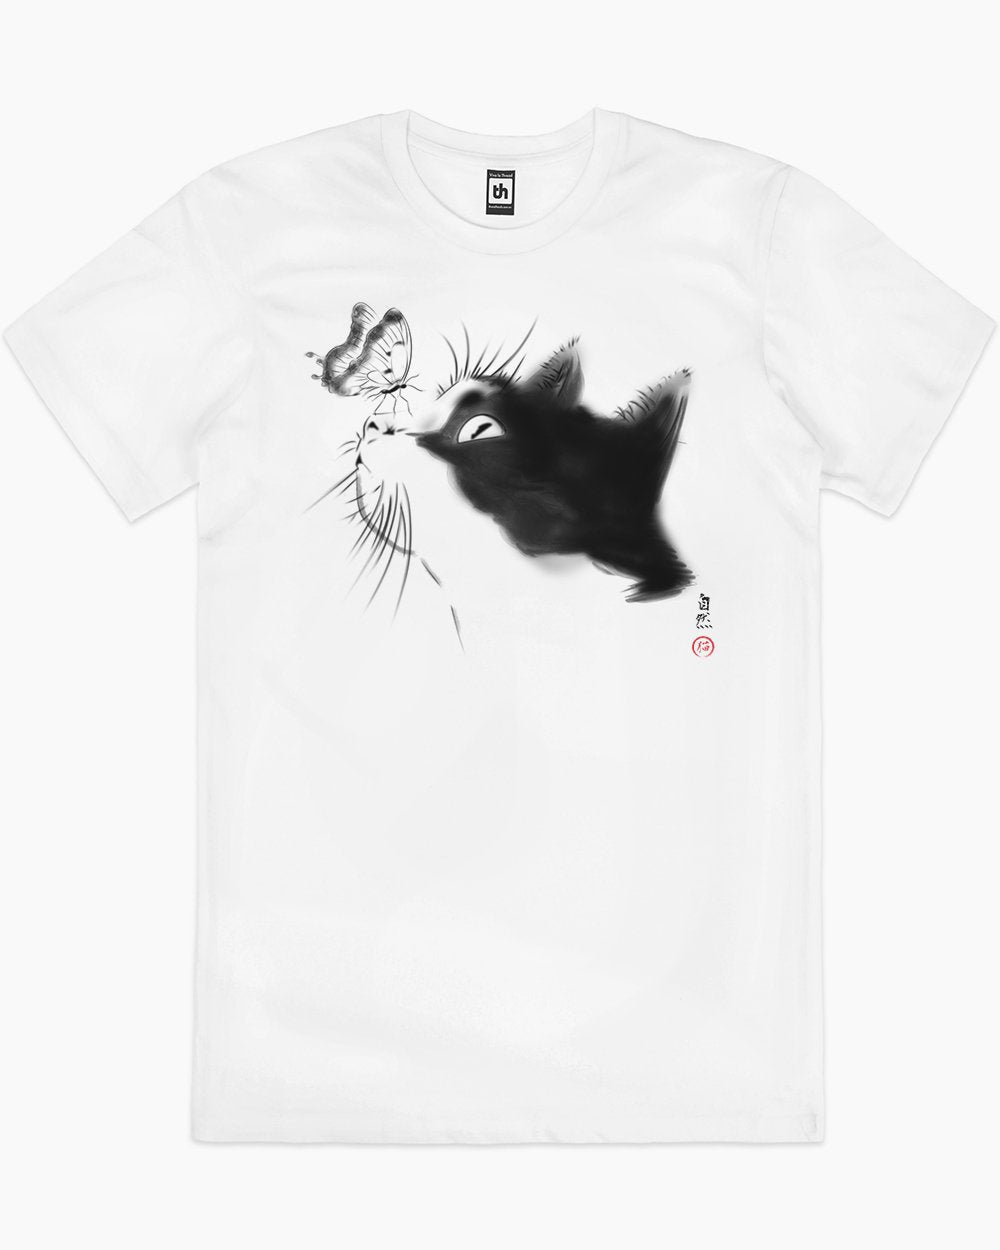 Curious Cat T-Shirt